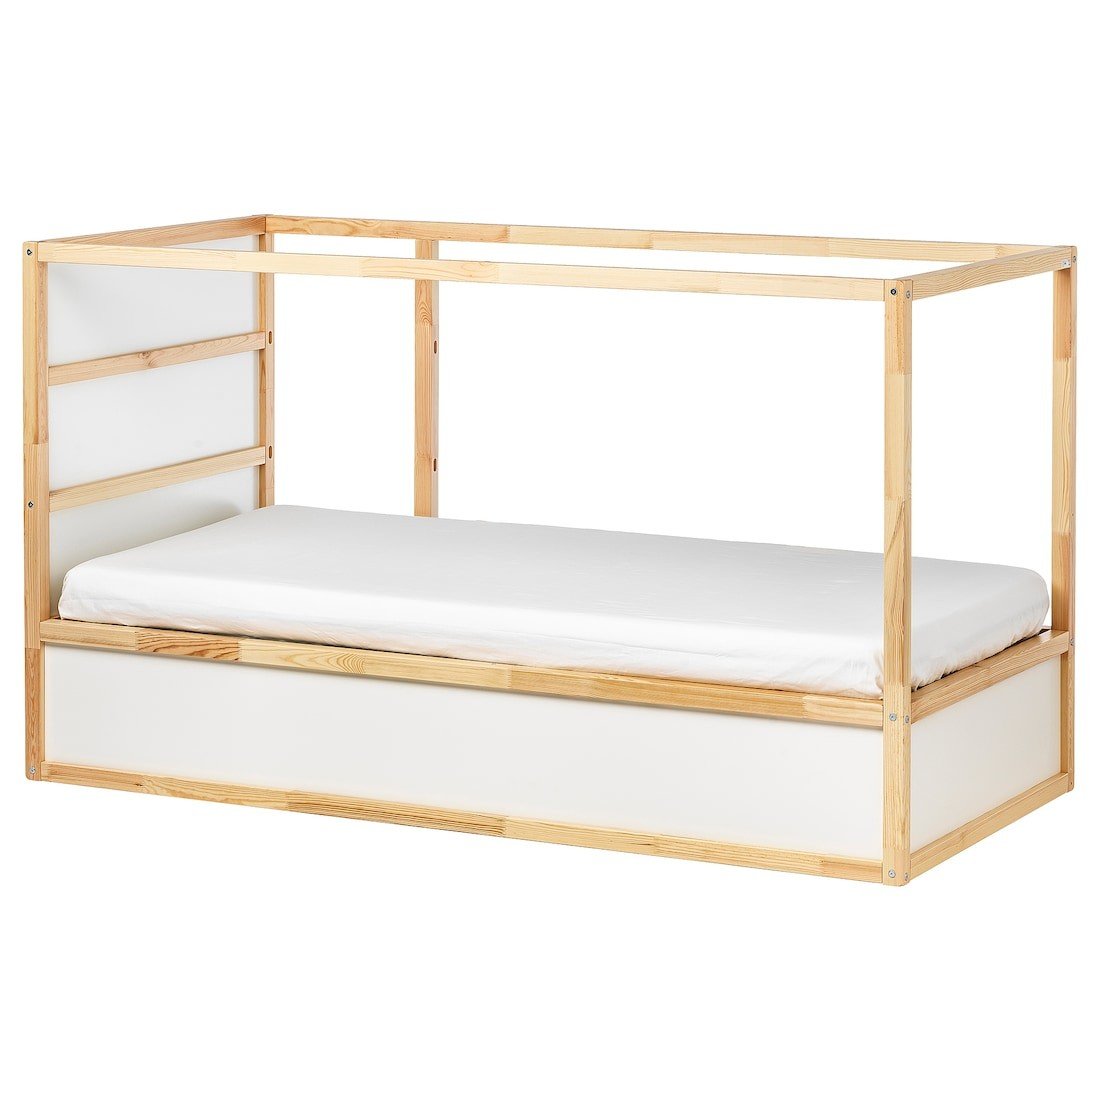 IKEA KURA КЮРА Ліжко двостороннє, білий / сосна, 90x200 см 80253809 | 802.538.09